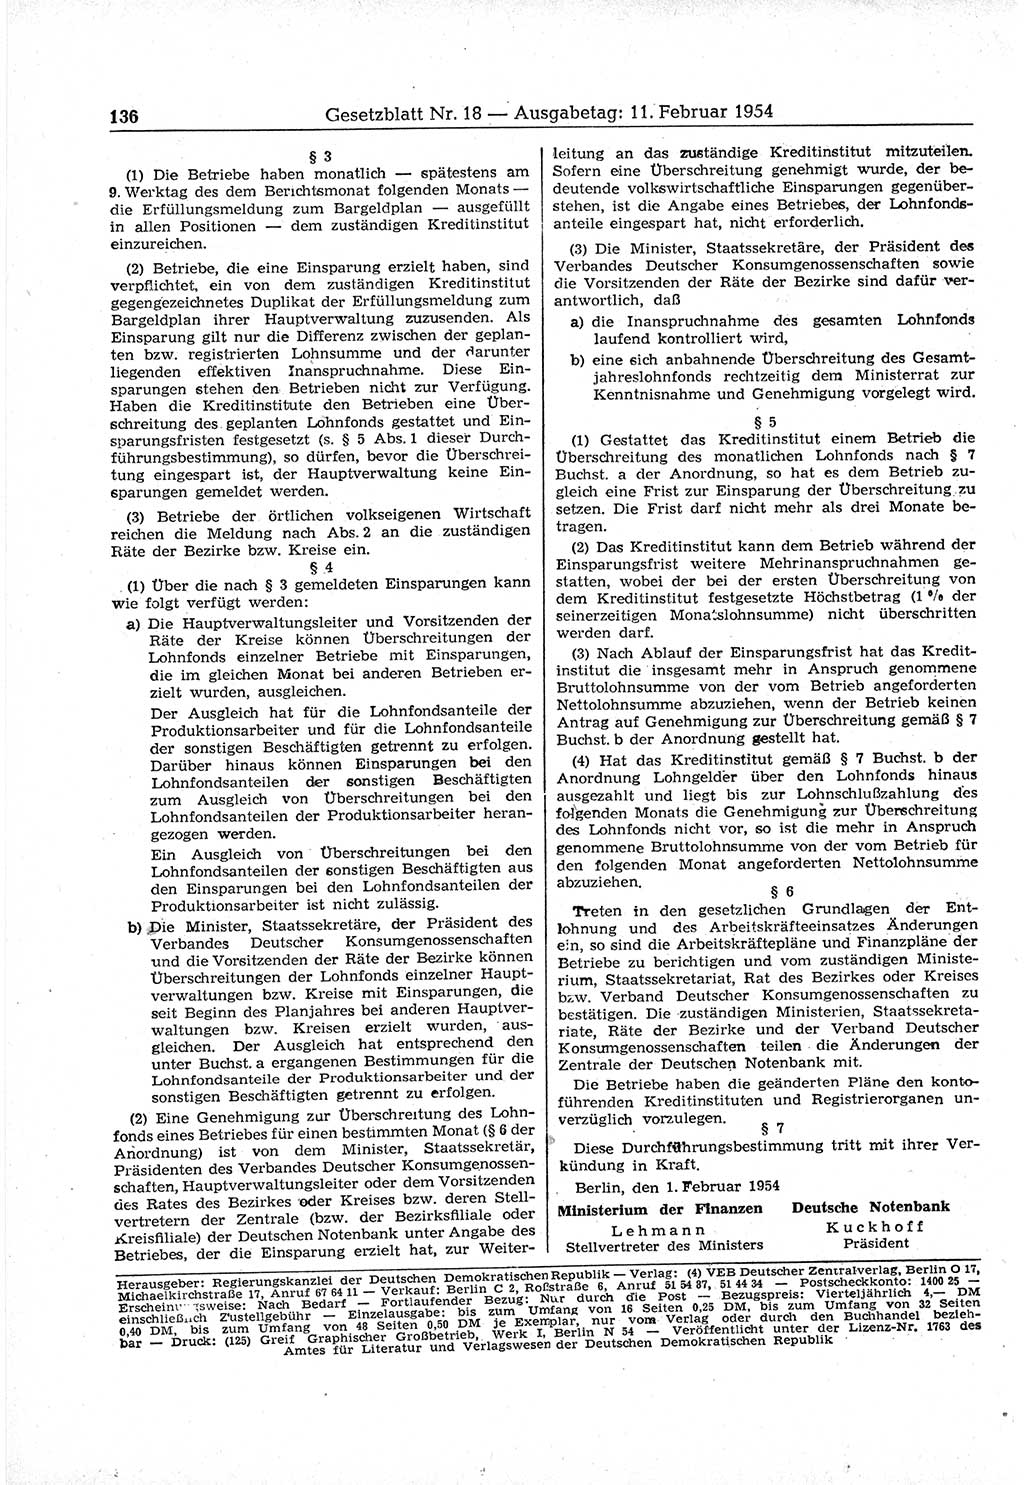 Gesetzblatt (GBl.) der Deutschen Demokratischen Republik (DDR) 1954, Seite 136 (GBl. DDR 1954, S. 136)